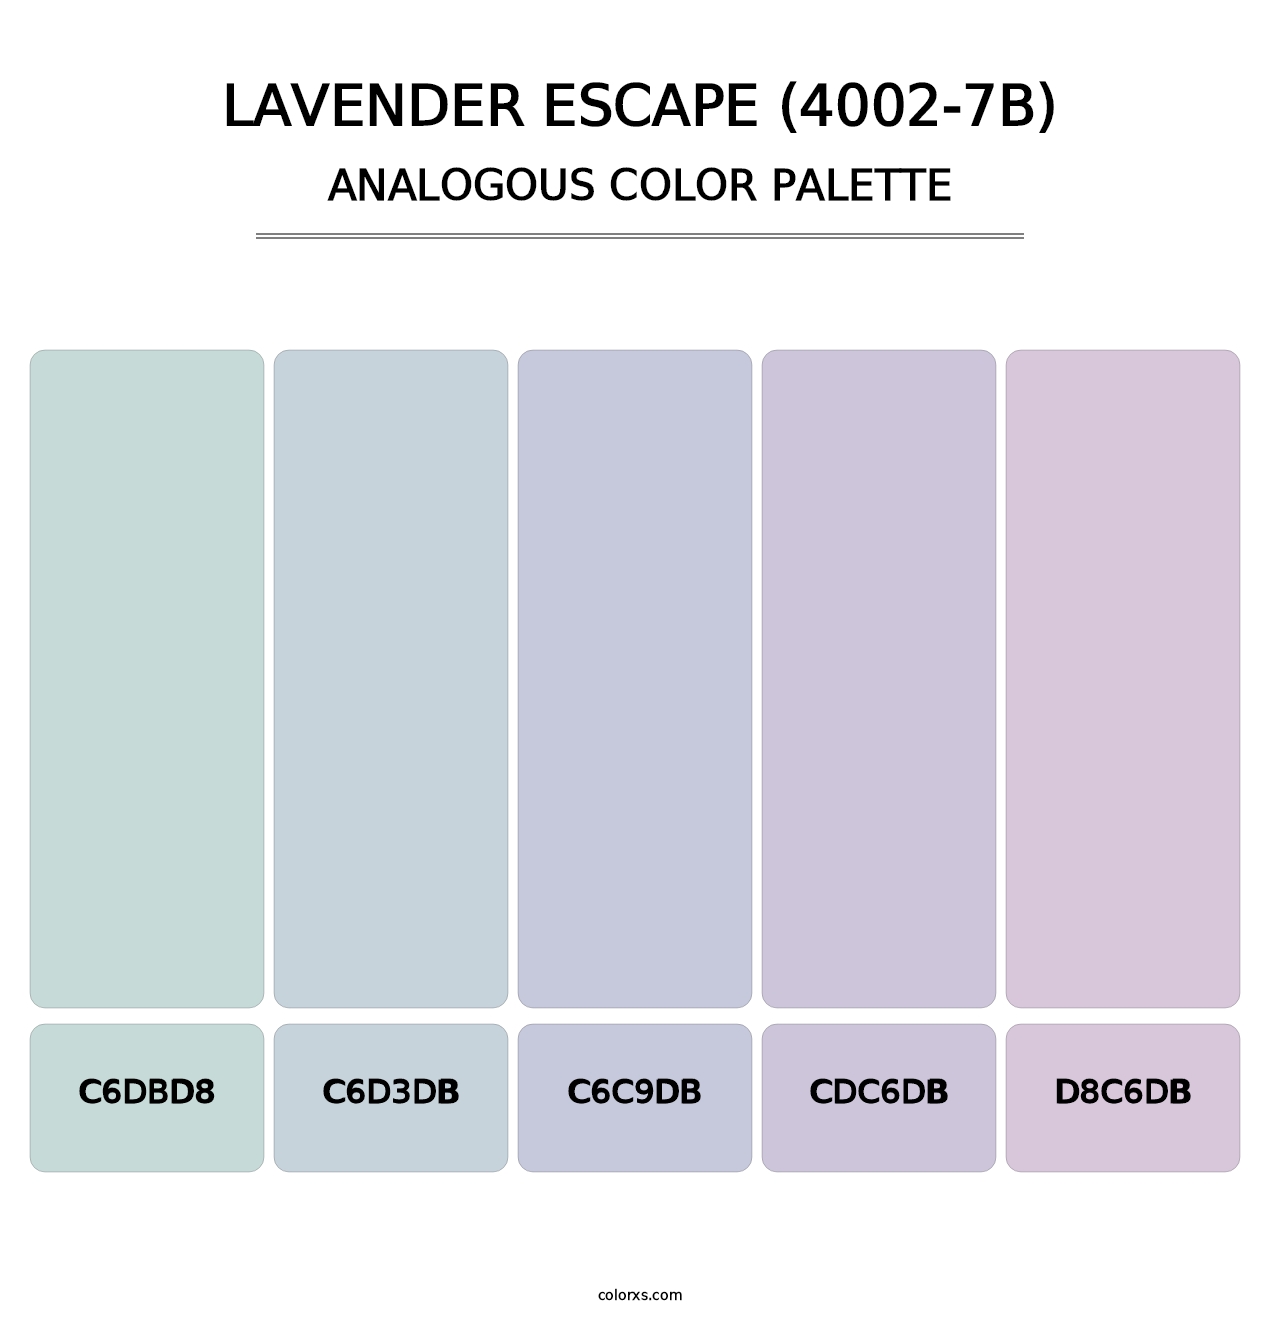 Lavender Escape (4002-7B) - Analogous Color Palette